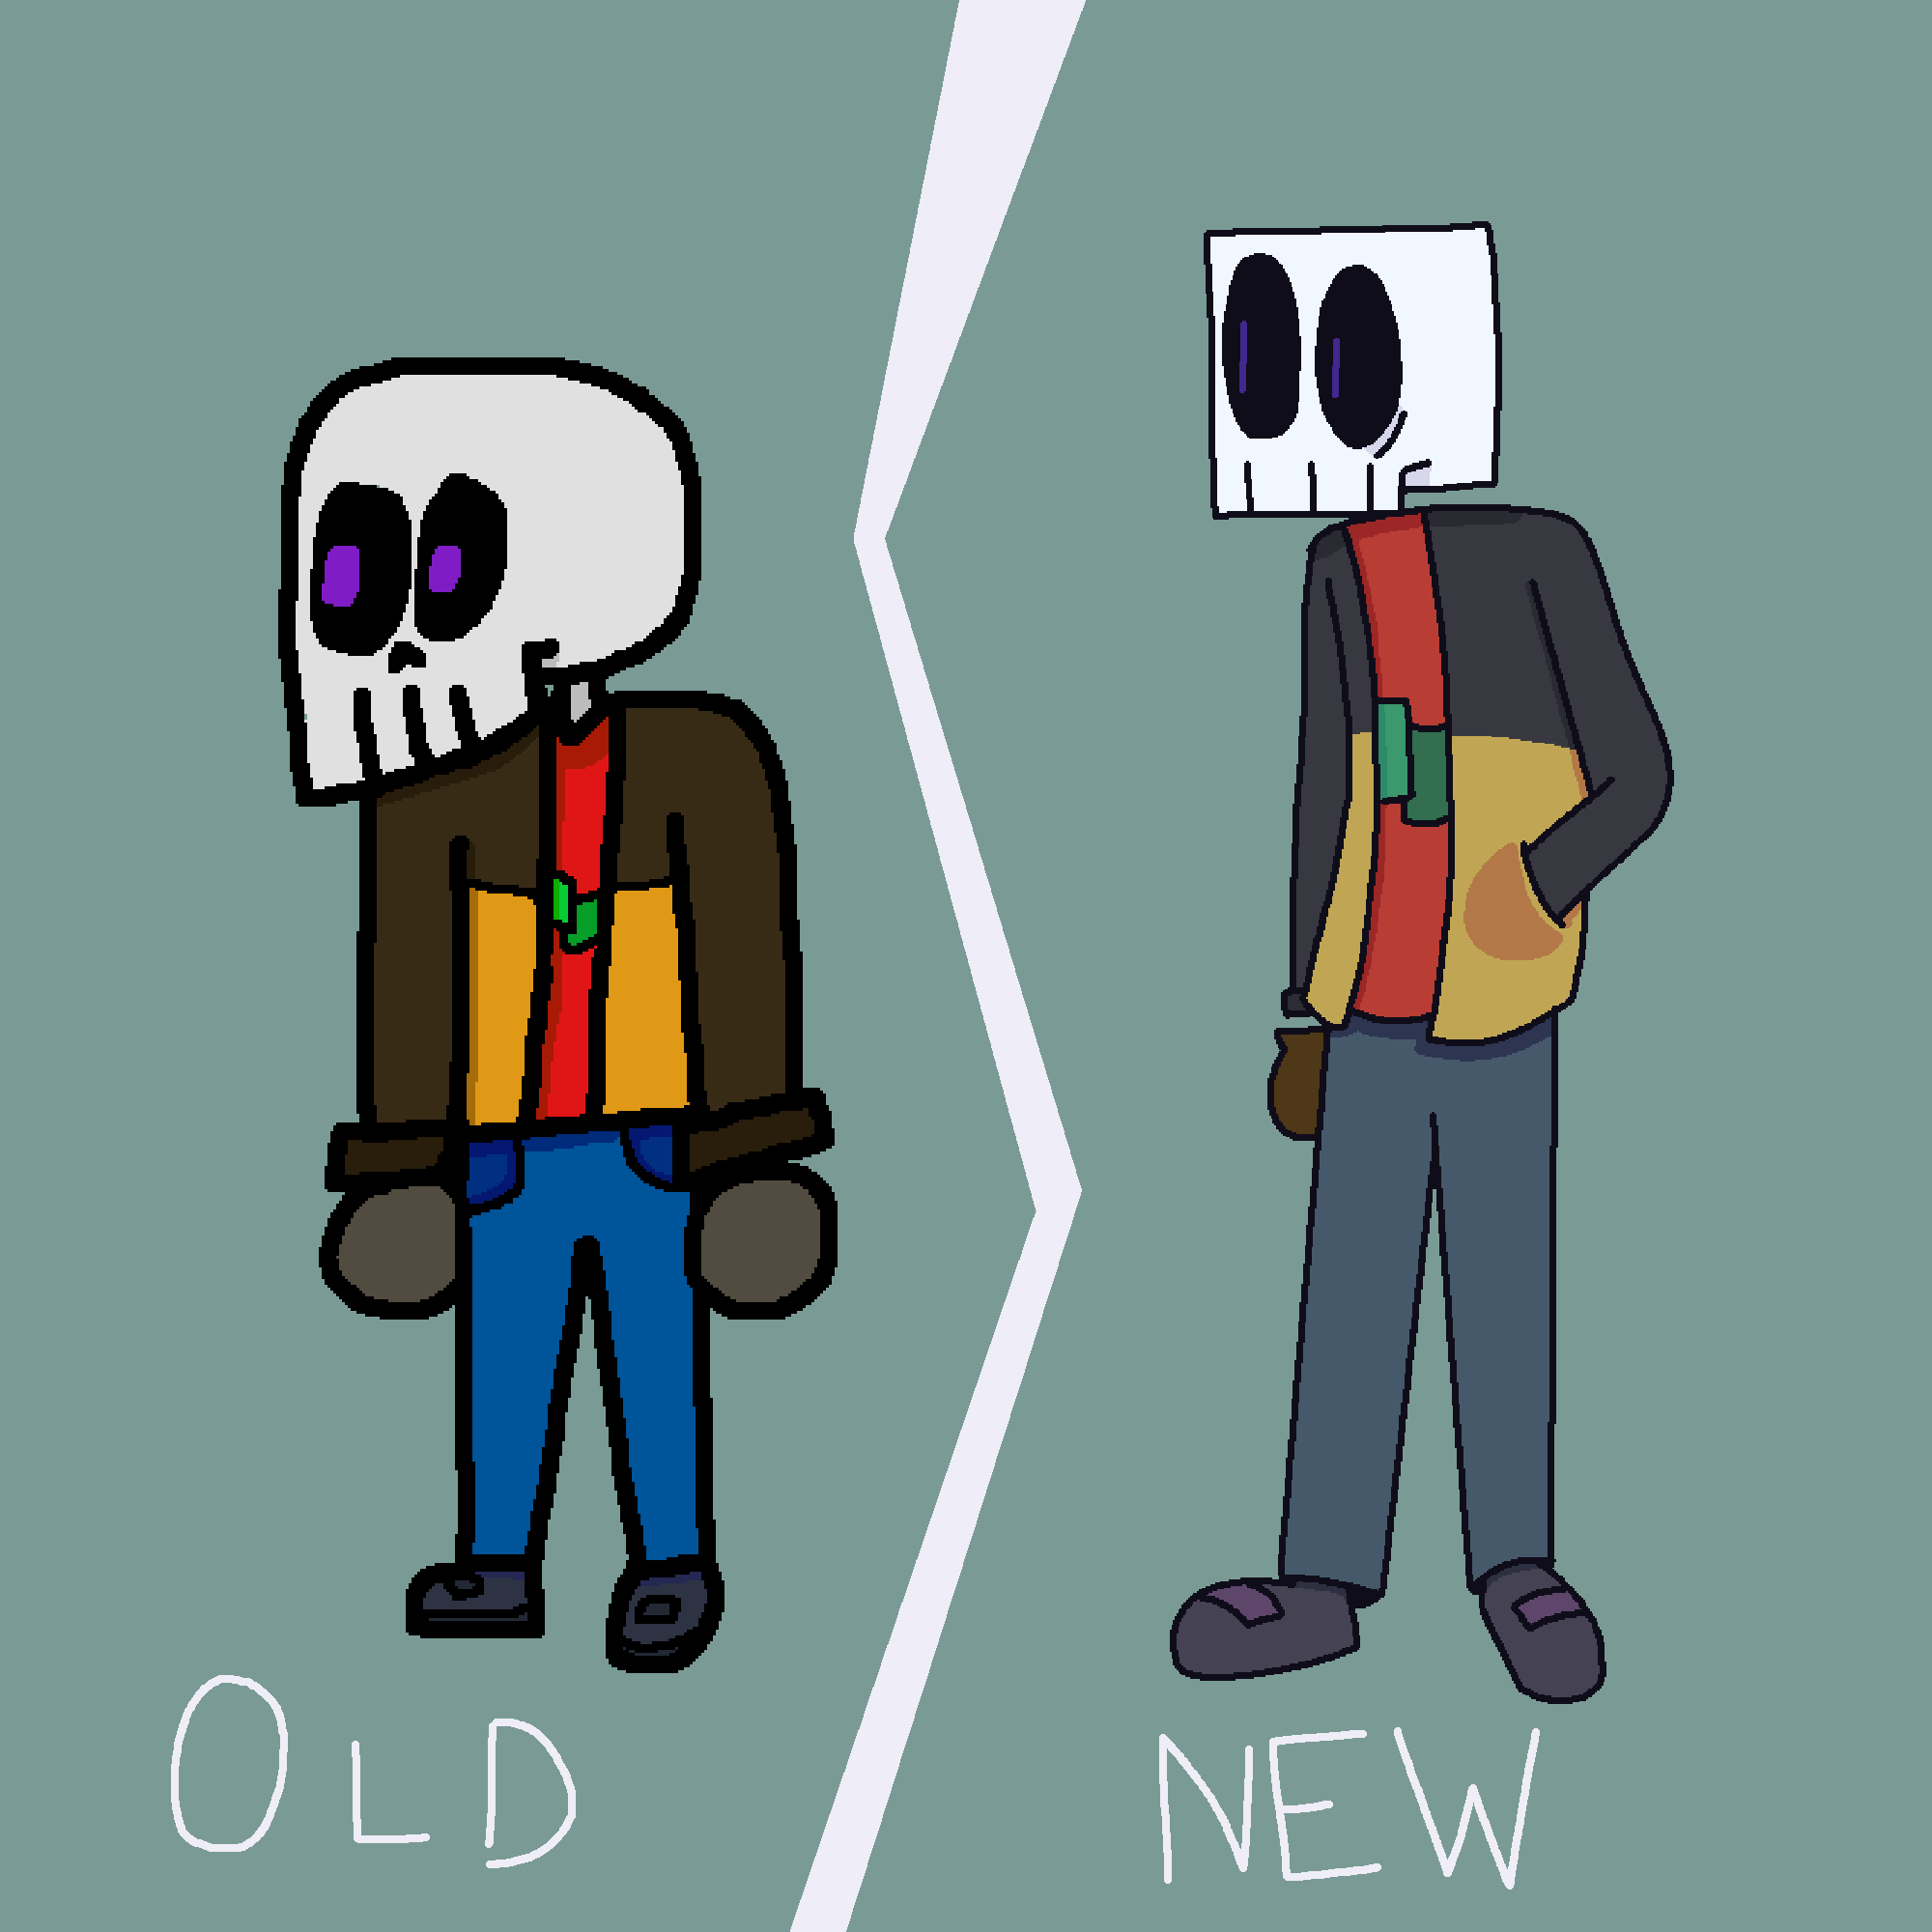 Old Skull besides New Skull